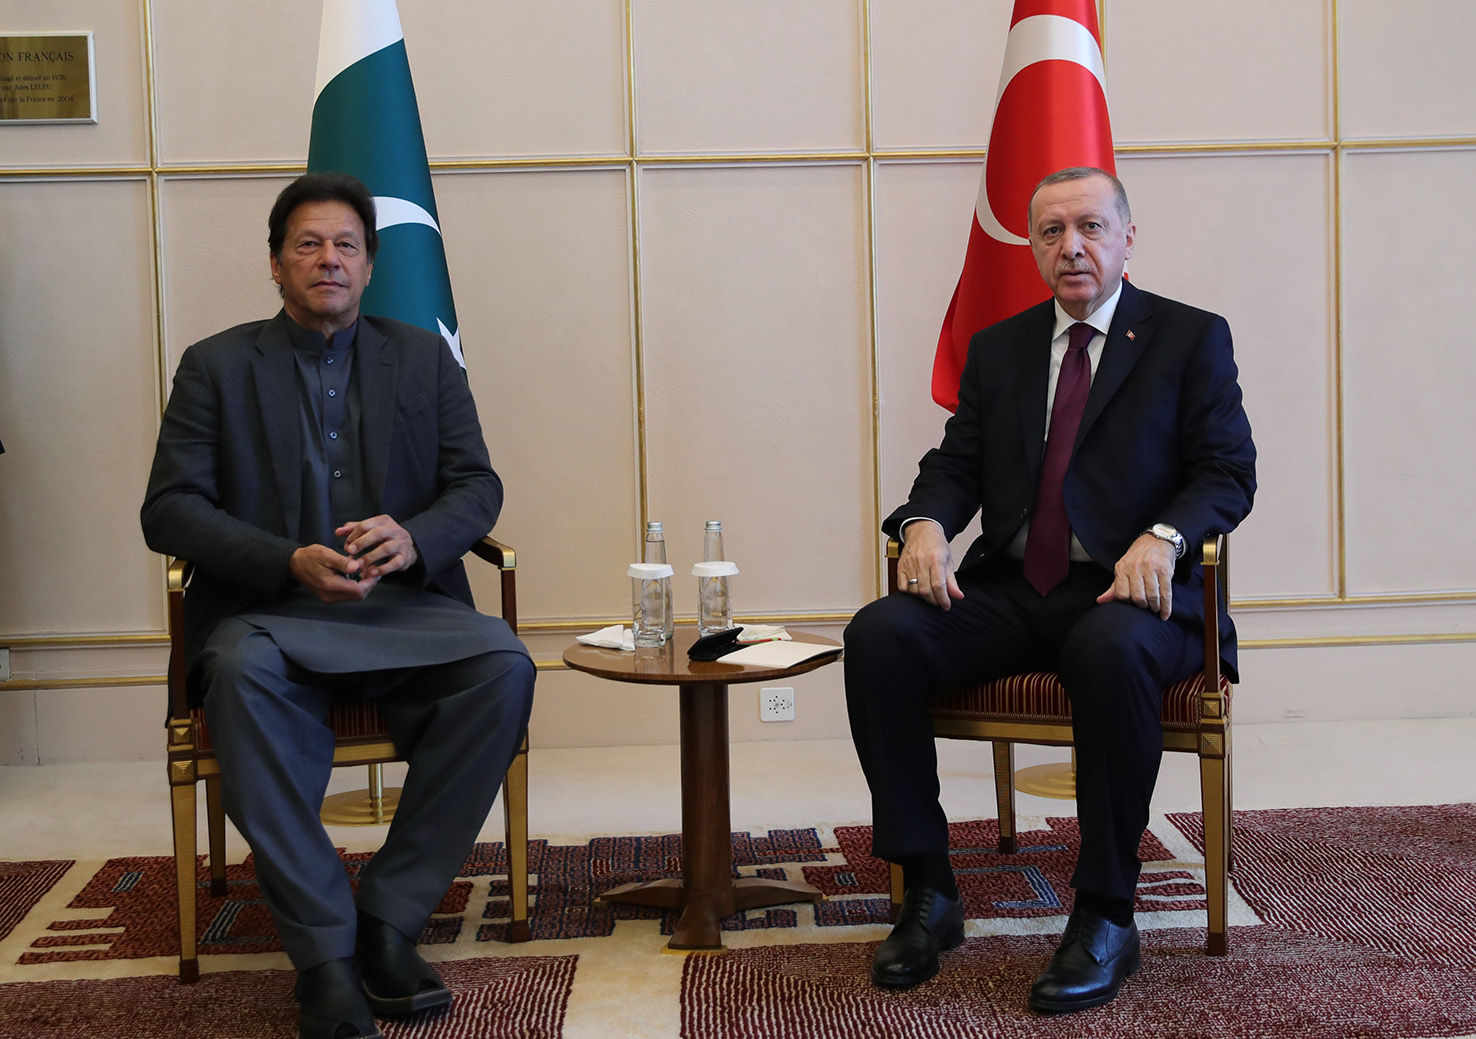 Cumhurbaşkanı Erdoğan, Pakistan Başbakanı Khan ile görüştü